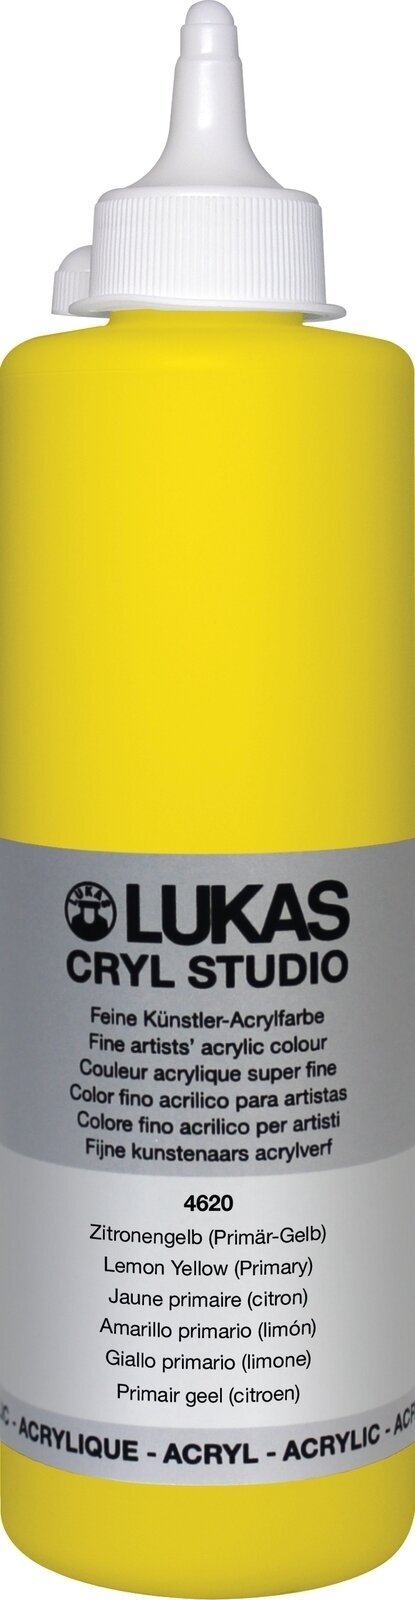 Acrylfarbe Lukas Cryl Studio Acrylfarbe 500 ml Lemon Yellow (Primary)